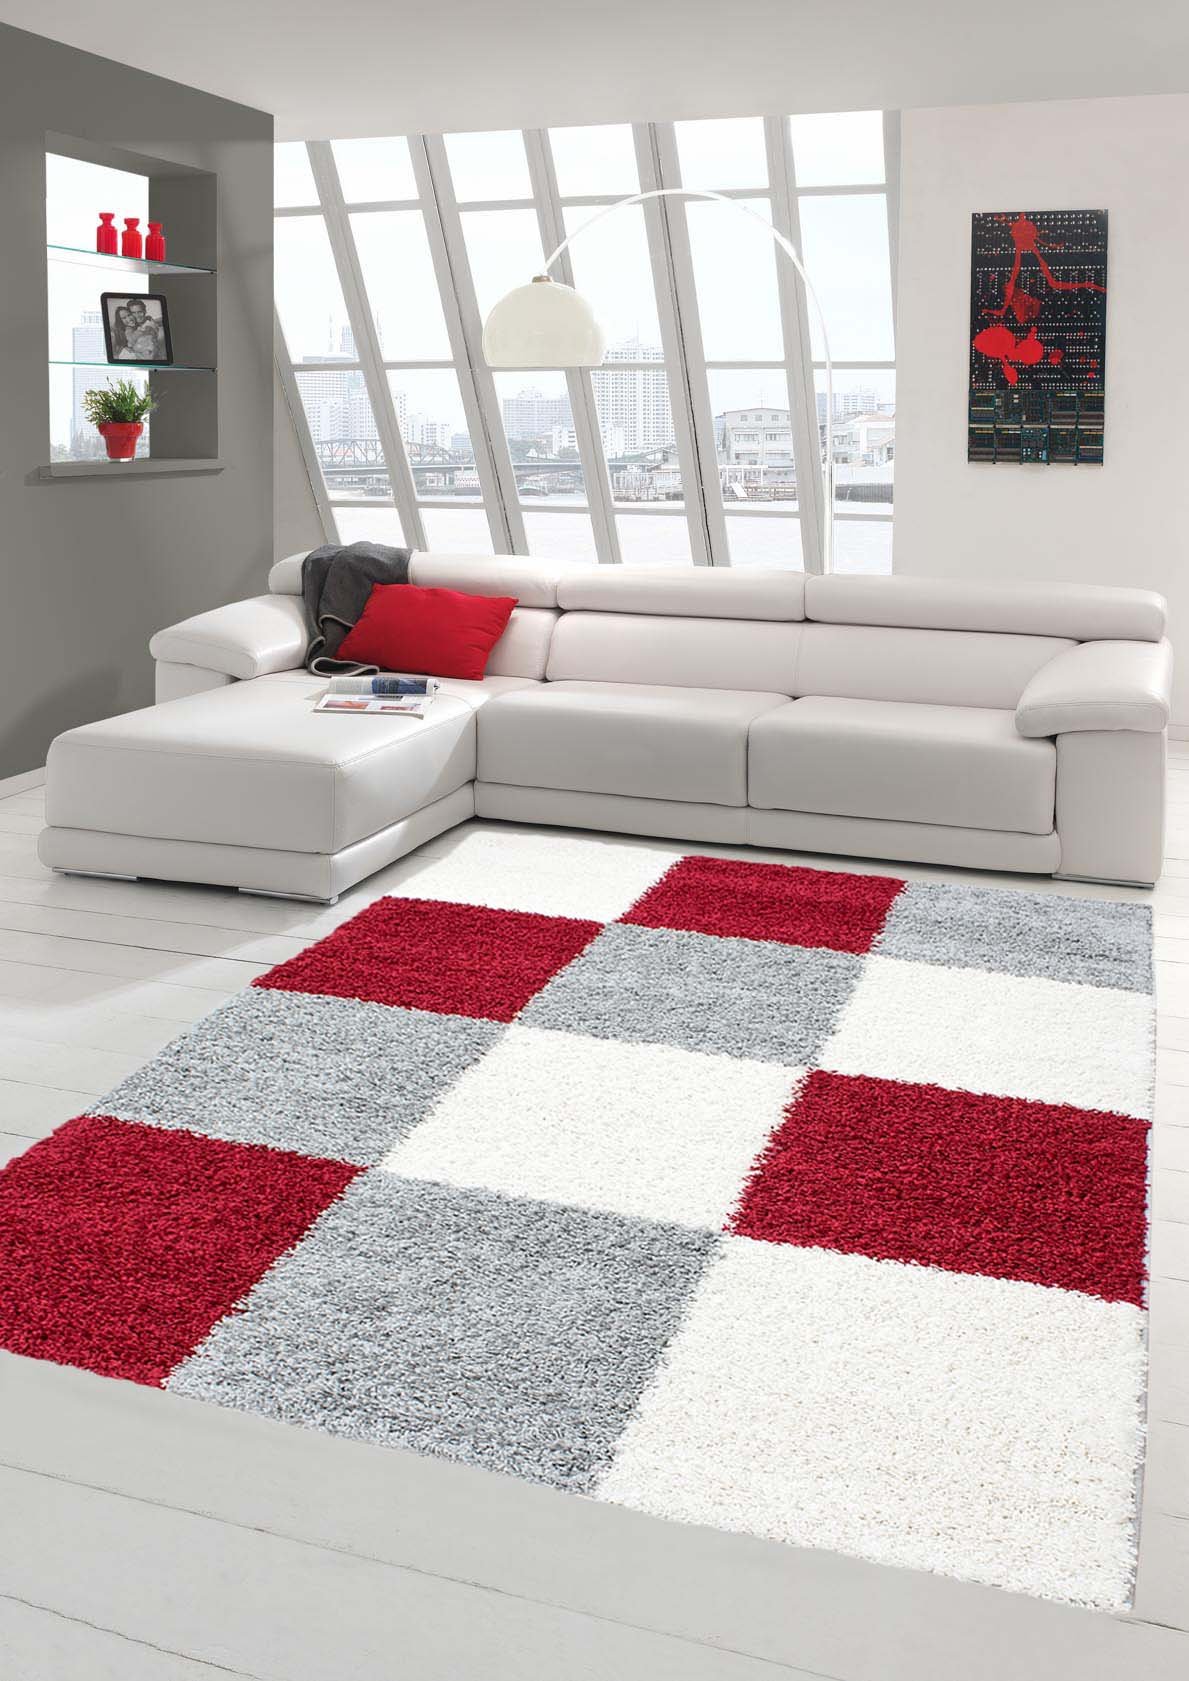 Shaggy Teppich Hochflor Langflor Teppich Wohnzimmer Teppich Gemustert in Karo Design Rot Grau Creme Größe 160x230 cm